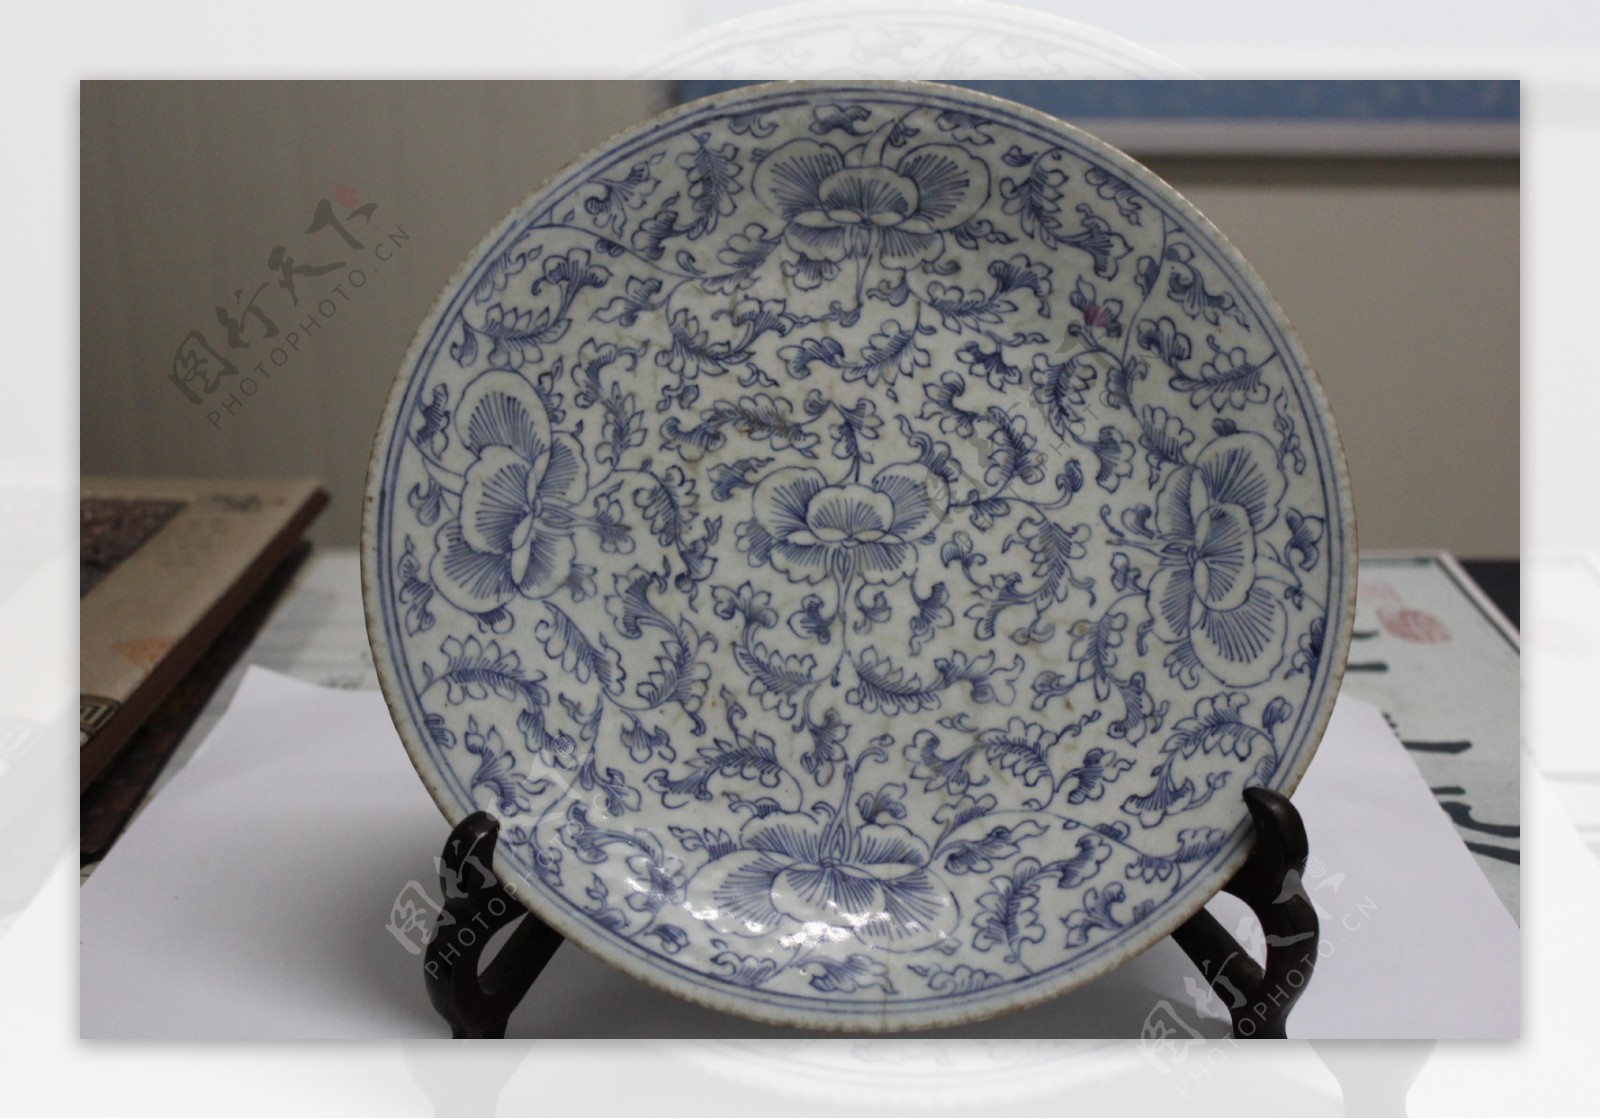 中国传统青花瓷瓷器